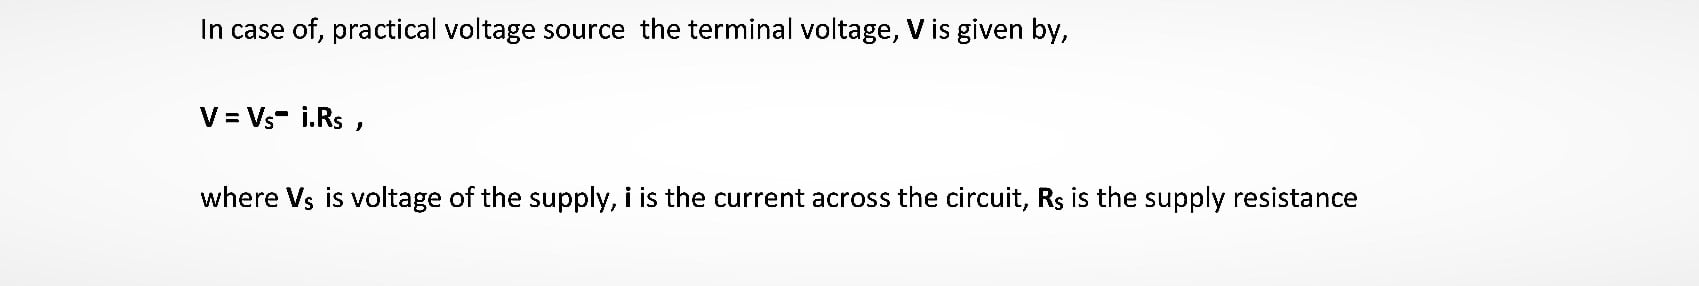 terminal voltage